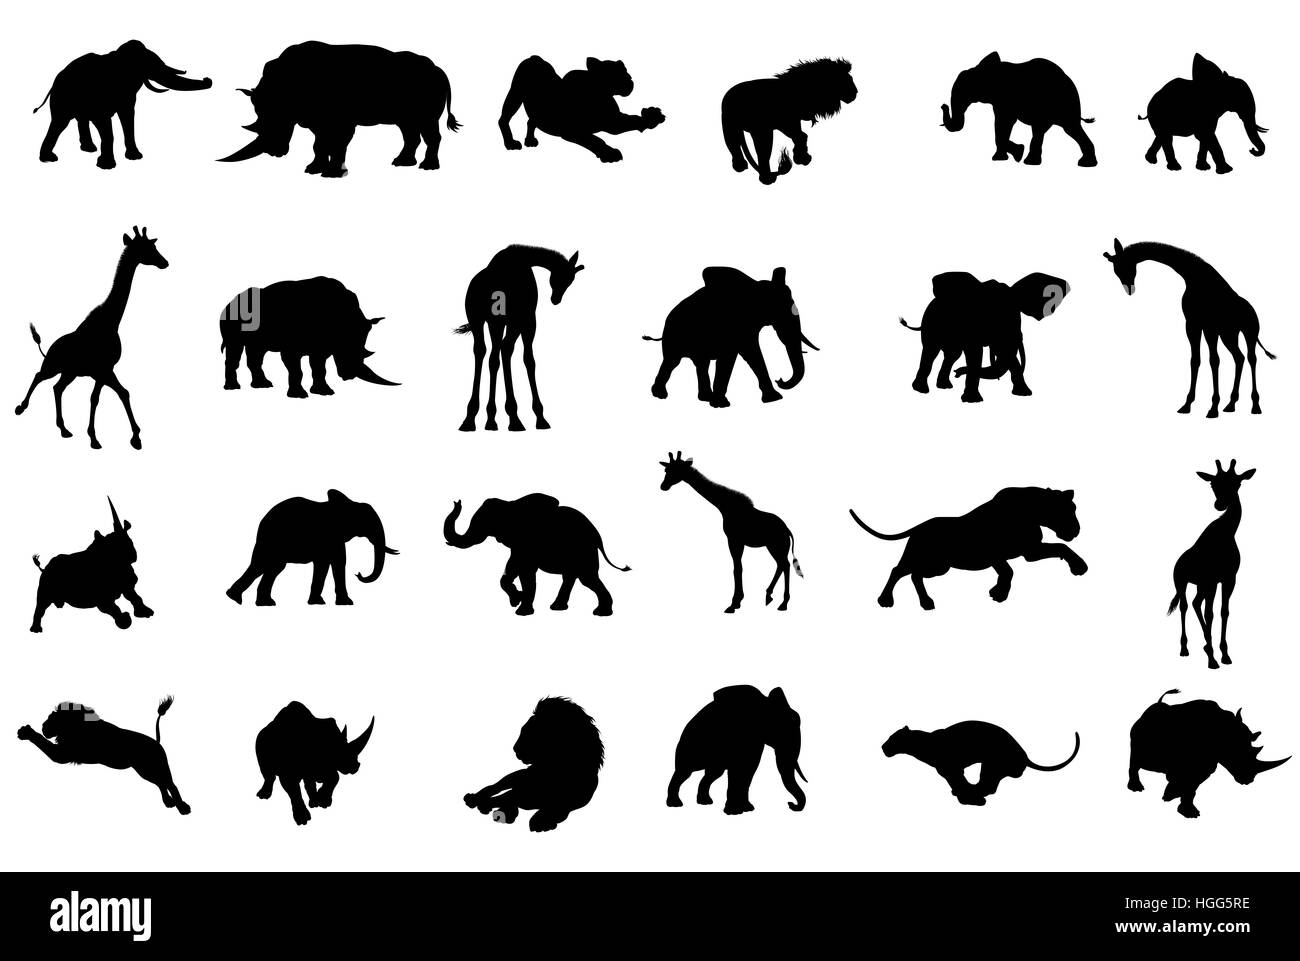 Eine Safari afrikanische Tier Silhouette einschließlich Elefanten, Giraffen, Nashörner und Löwen Stockfoto